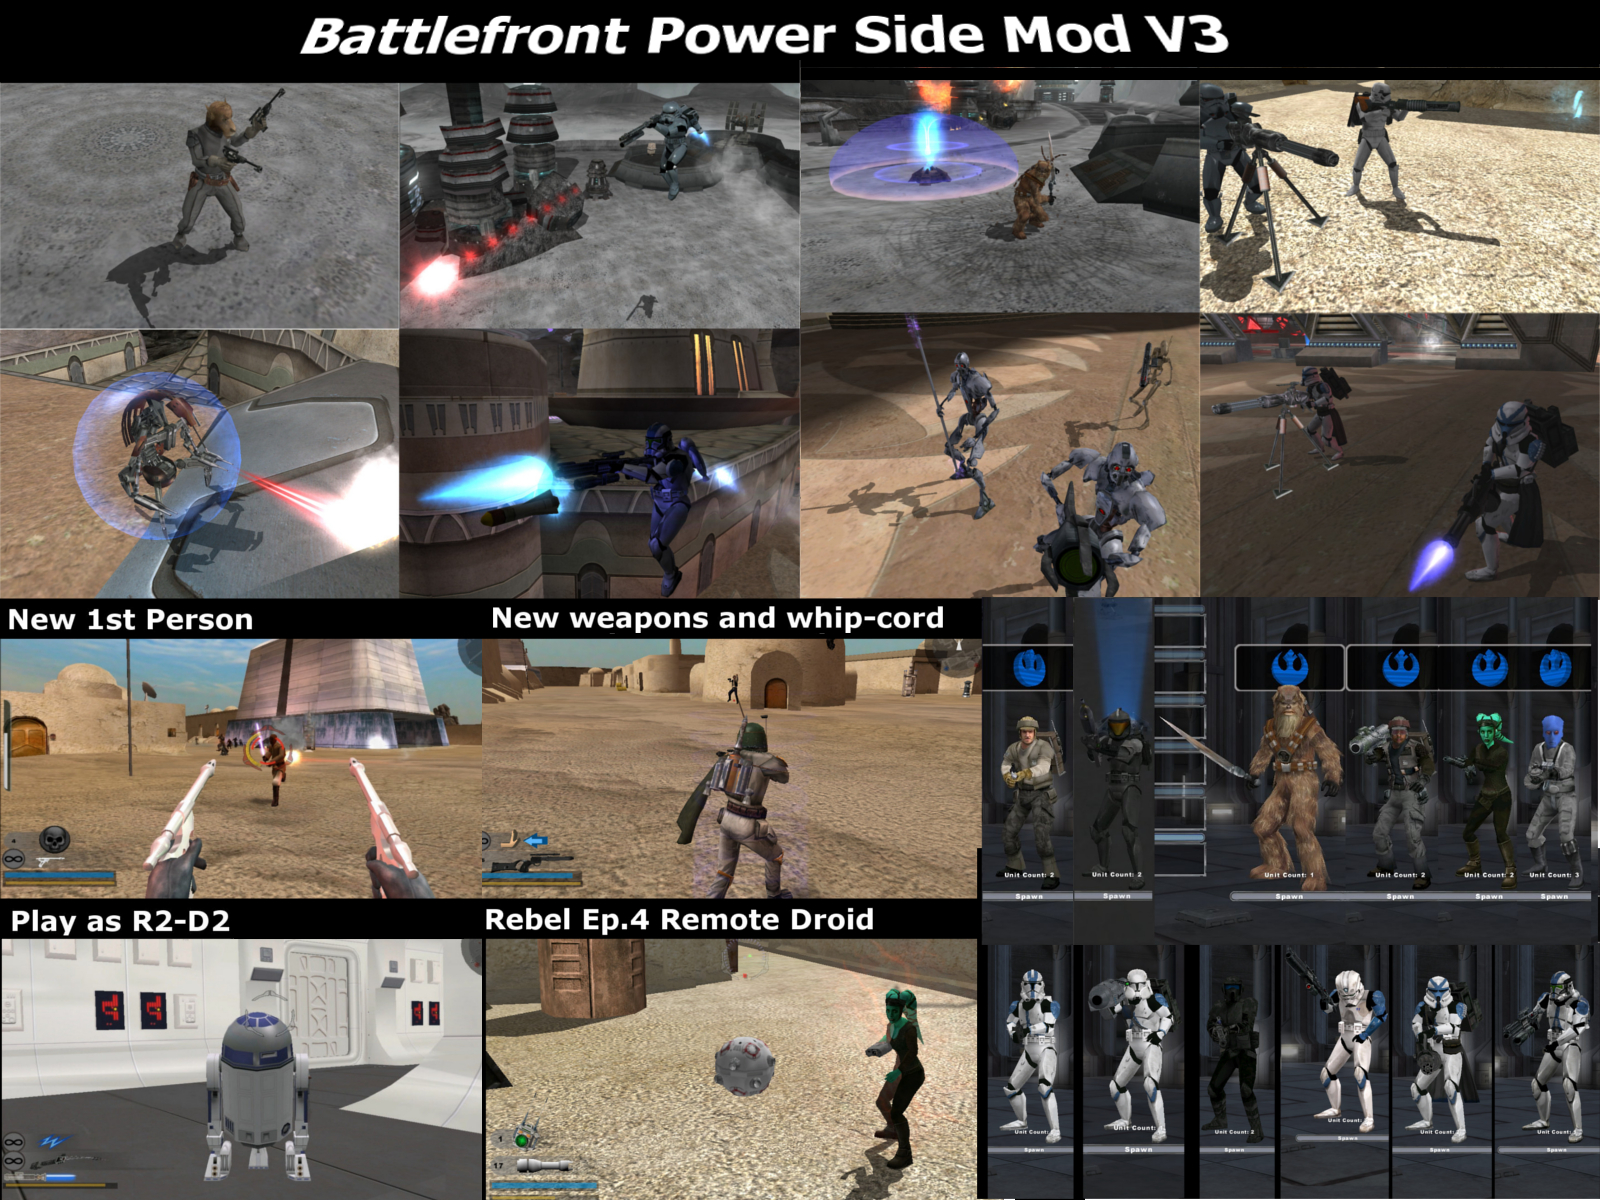 Top 5 Star Wars Battlefront 2 (2005) Mods of 2021 